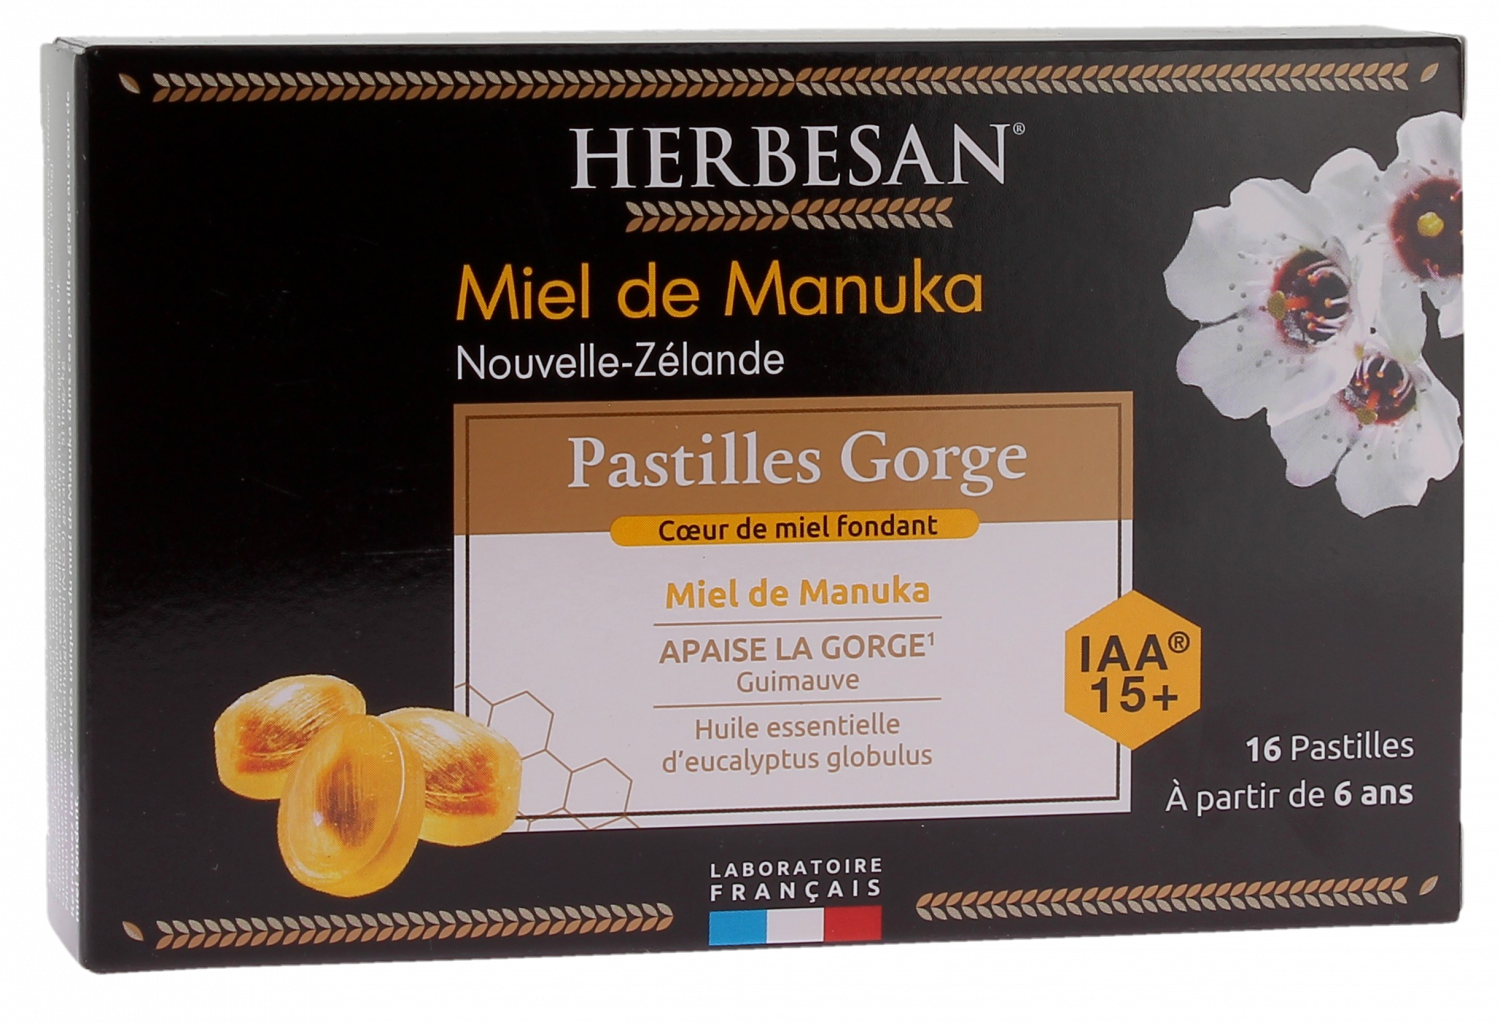 Pastilles gorge miel de manuka Herbesan - boite de 16 pastilles